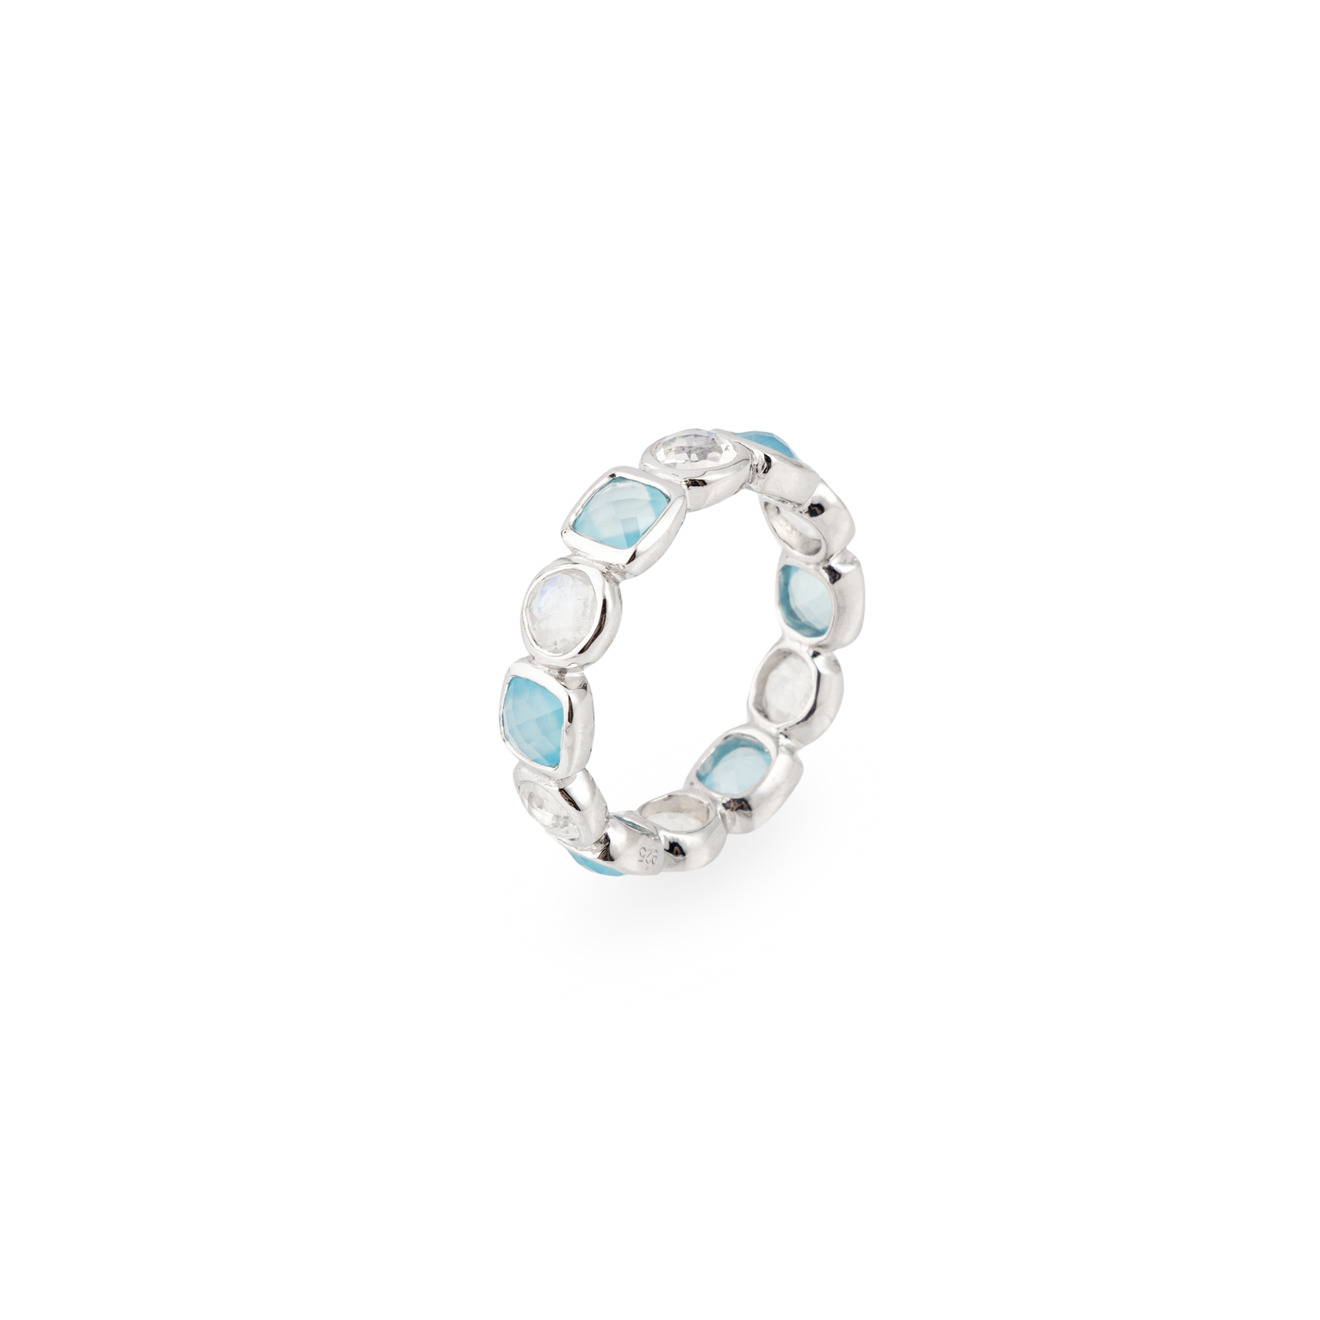 Wisteria Gems Серебряное кольцо из микса лунных камней и голубого халцедона